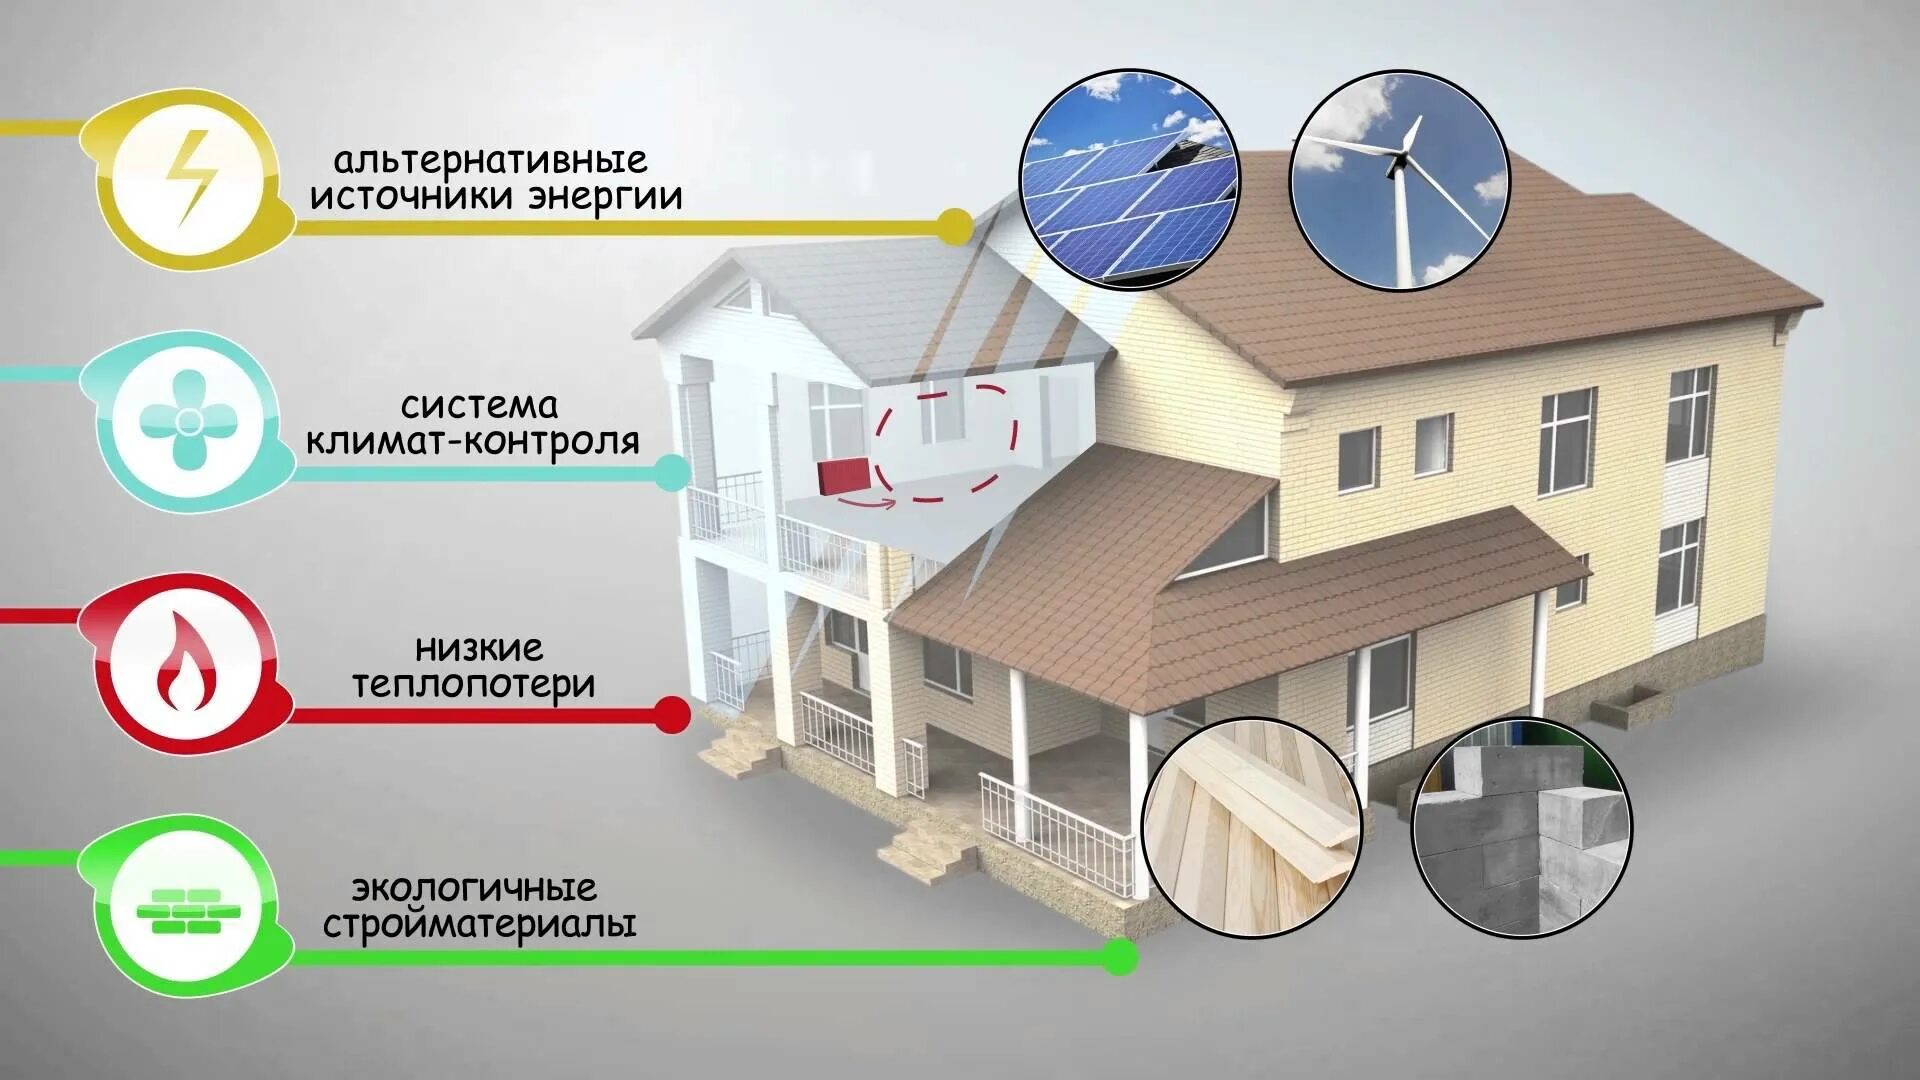 Как повысить уровень дома. Энергосбережение в доме. Технологии для энергосбережения в строительстве. Энергосберегающие технологии в строительстве. Энергосберегающие дома.